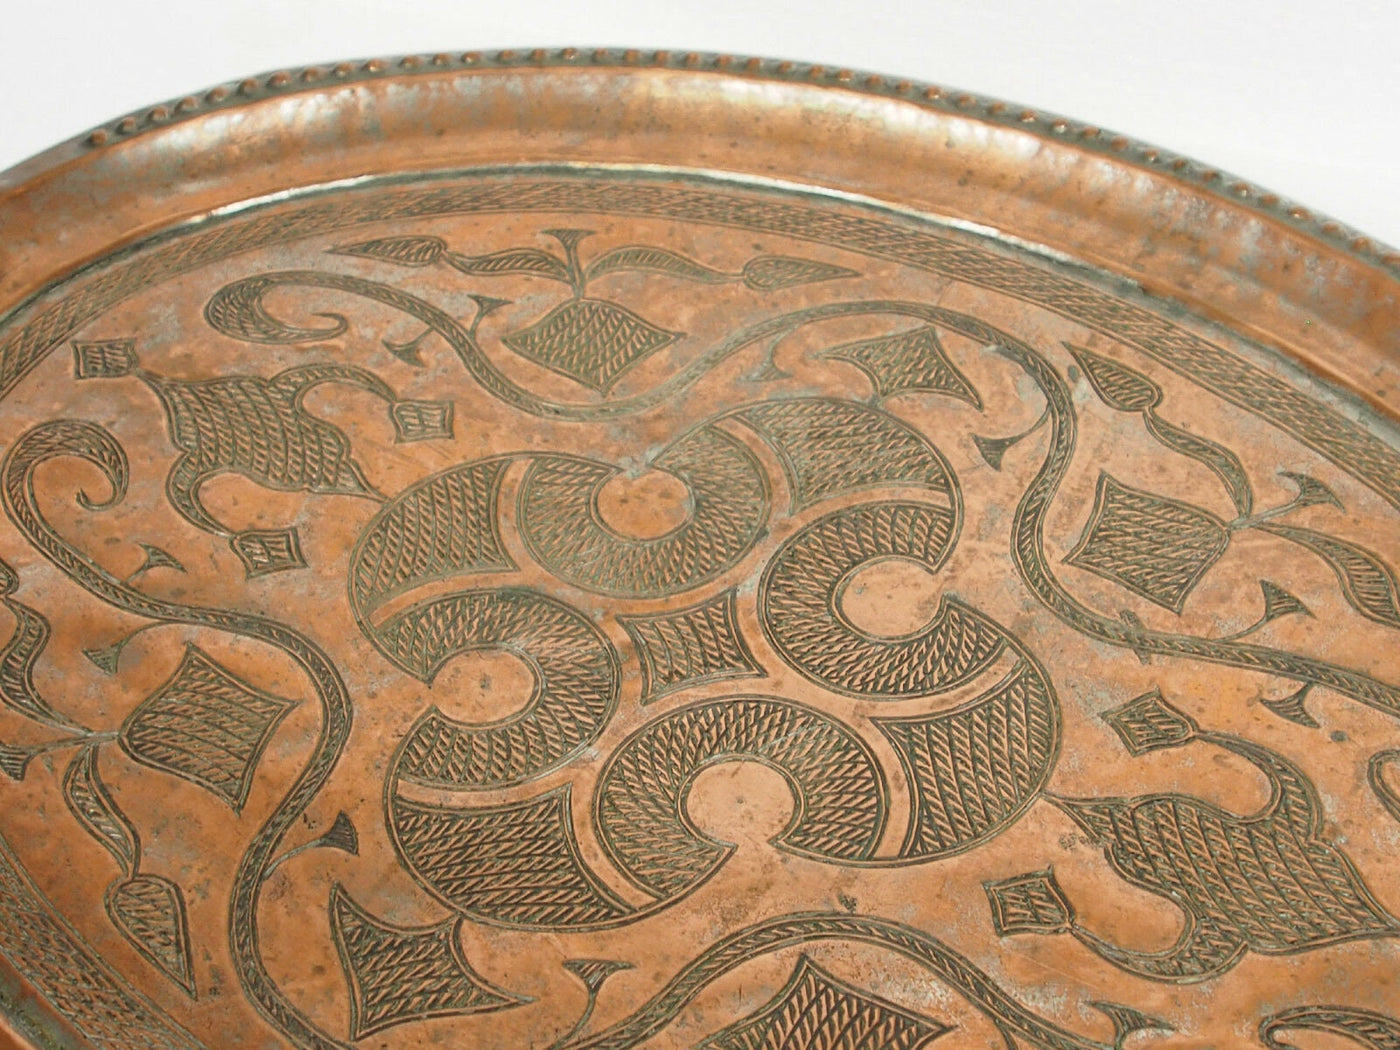 48x37 cm antik sehr seltener Massiv orientalische Kupfer tablett Teetisch Afghanistan No:K28  Orientsbazar   